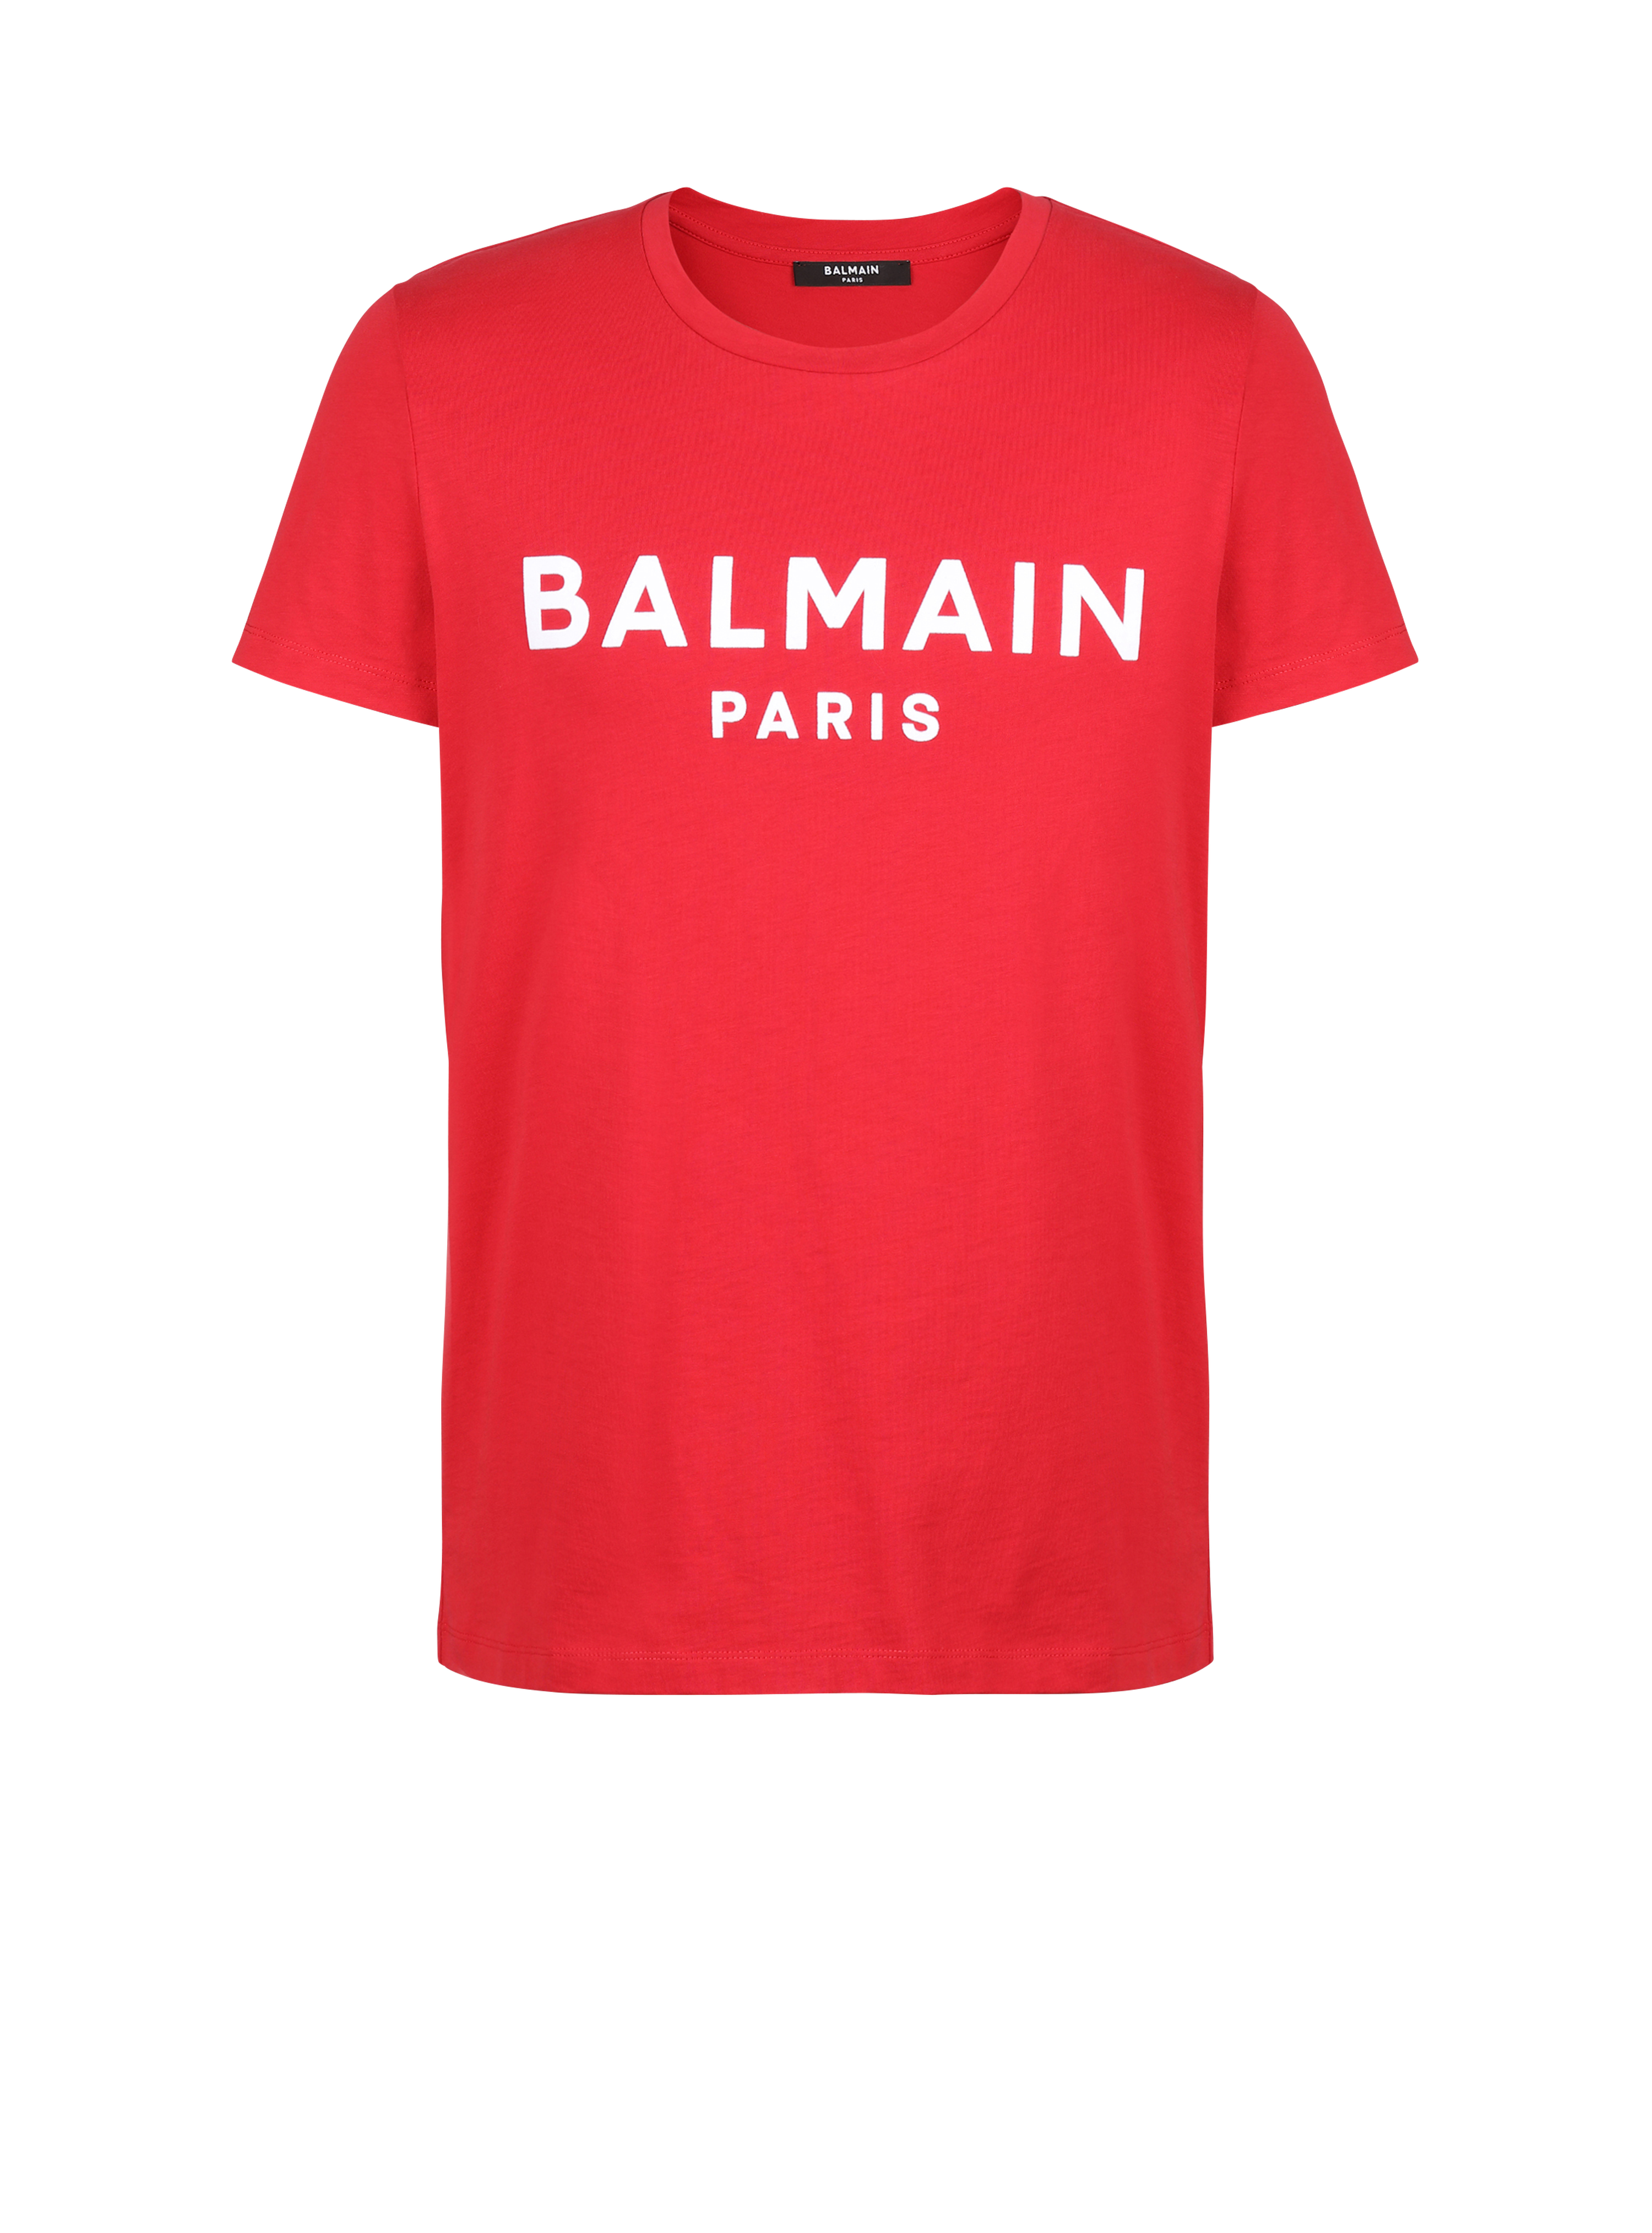 T-shirt en coton floqué logo Balmain Paris, rouge